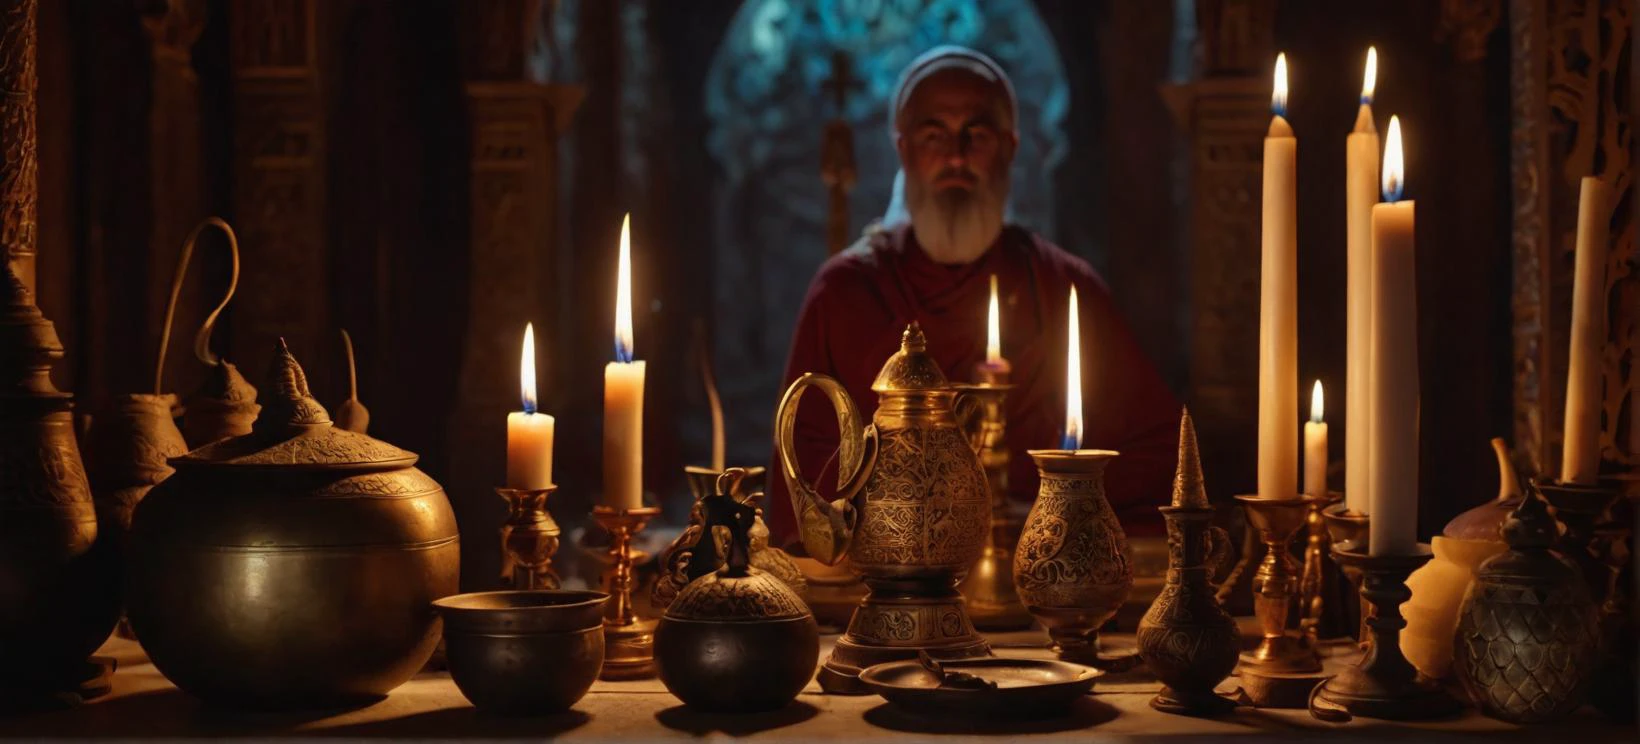 Um filme cinematográfico ainda capturando o ornamentado, instrumentos ritualísticos usados por um membro de um culto religioso, a luz bruxuleante das velas lançando um brilho sobrenatural nos objetos misteriosos.

